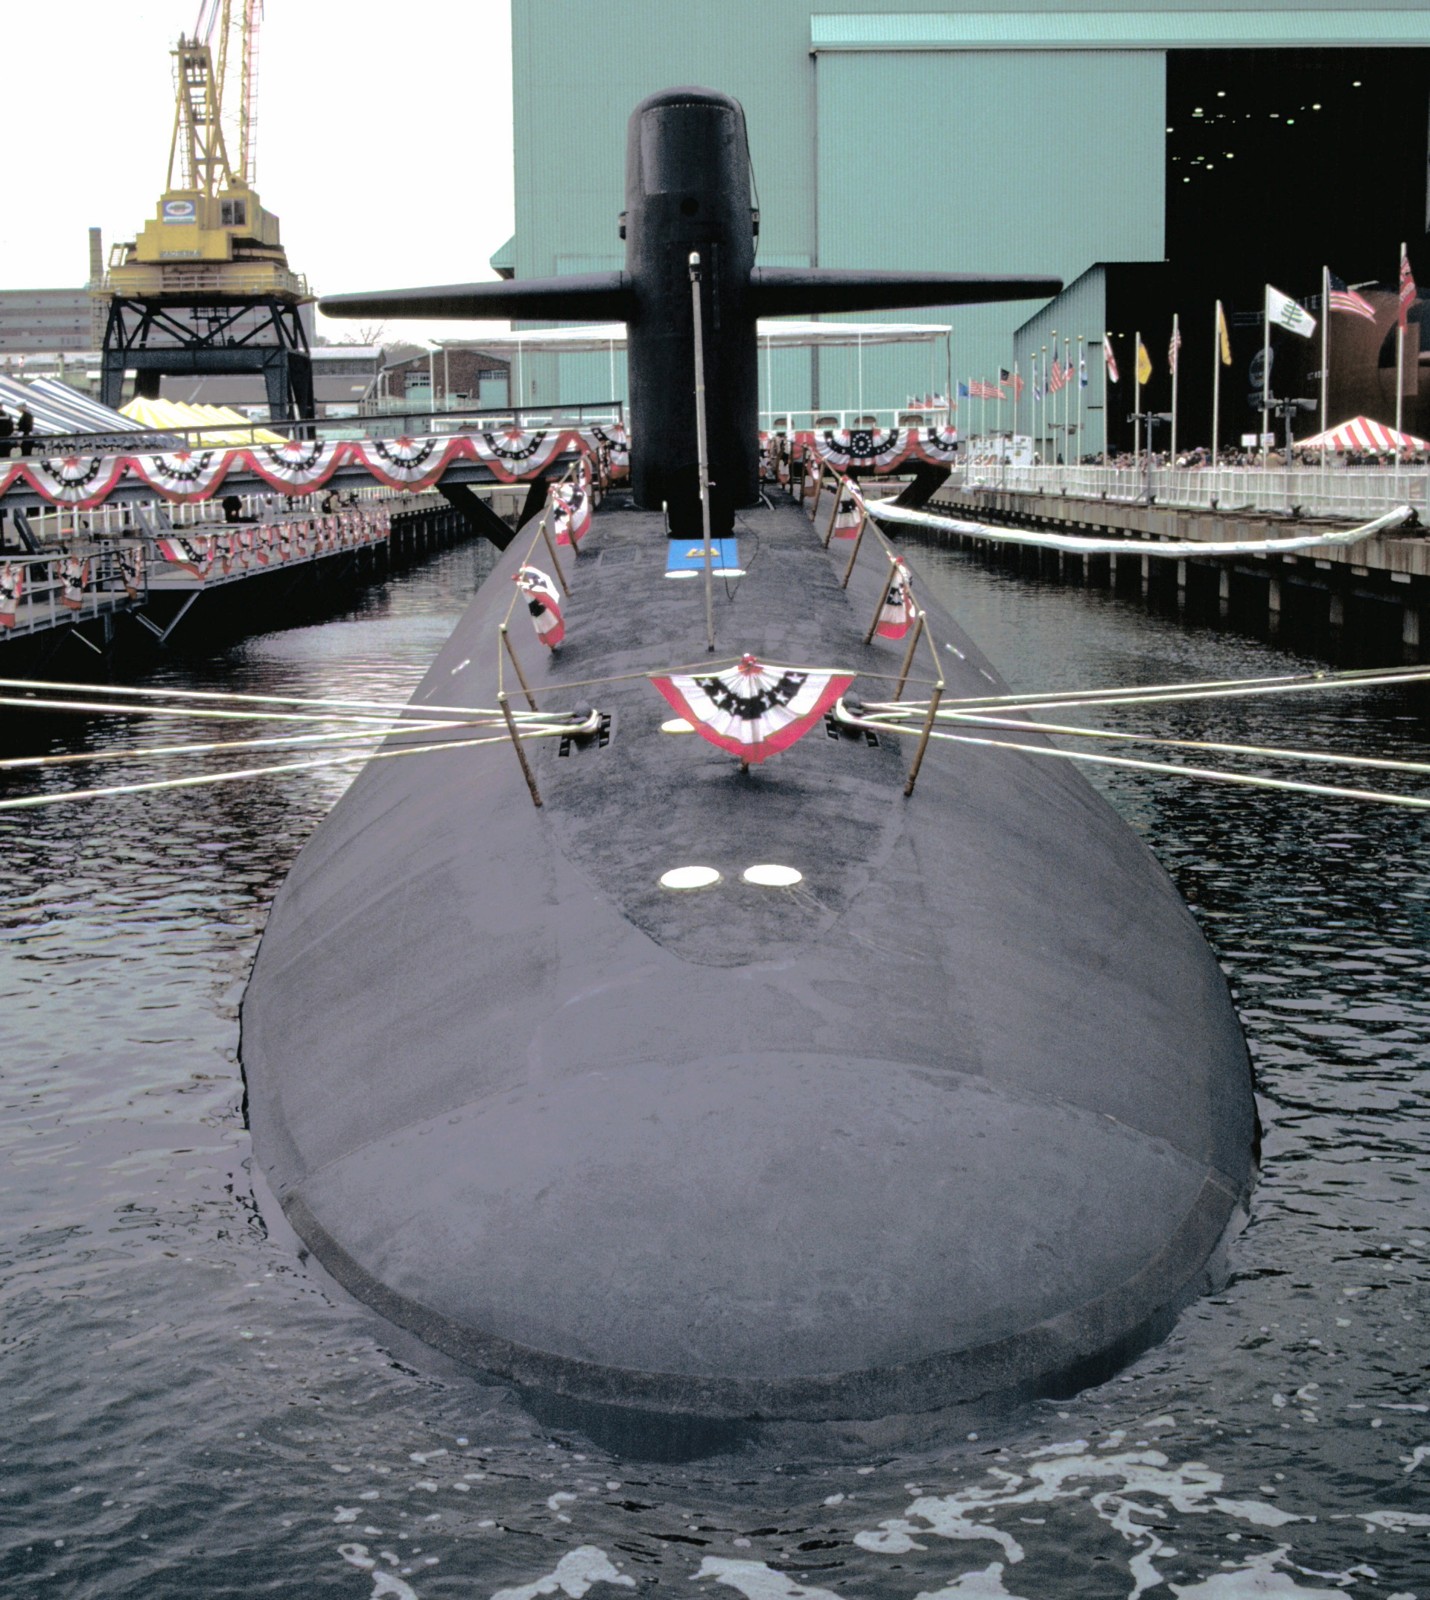 ssbn-726 uss ohio ballistic missile submarine us navy 1981 68 commissioning ceremony